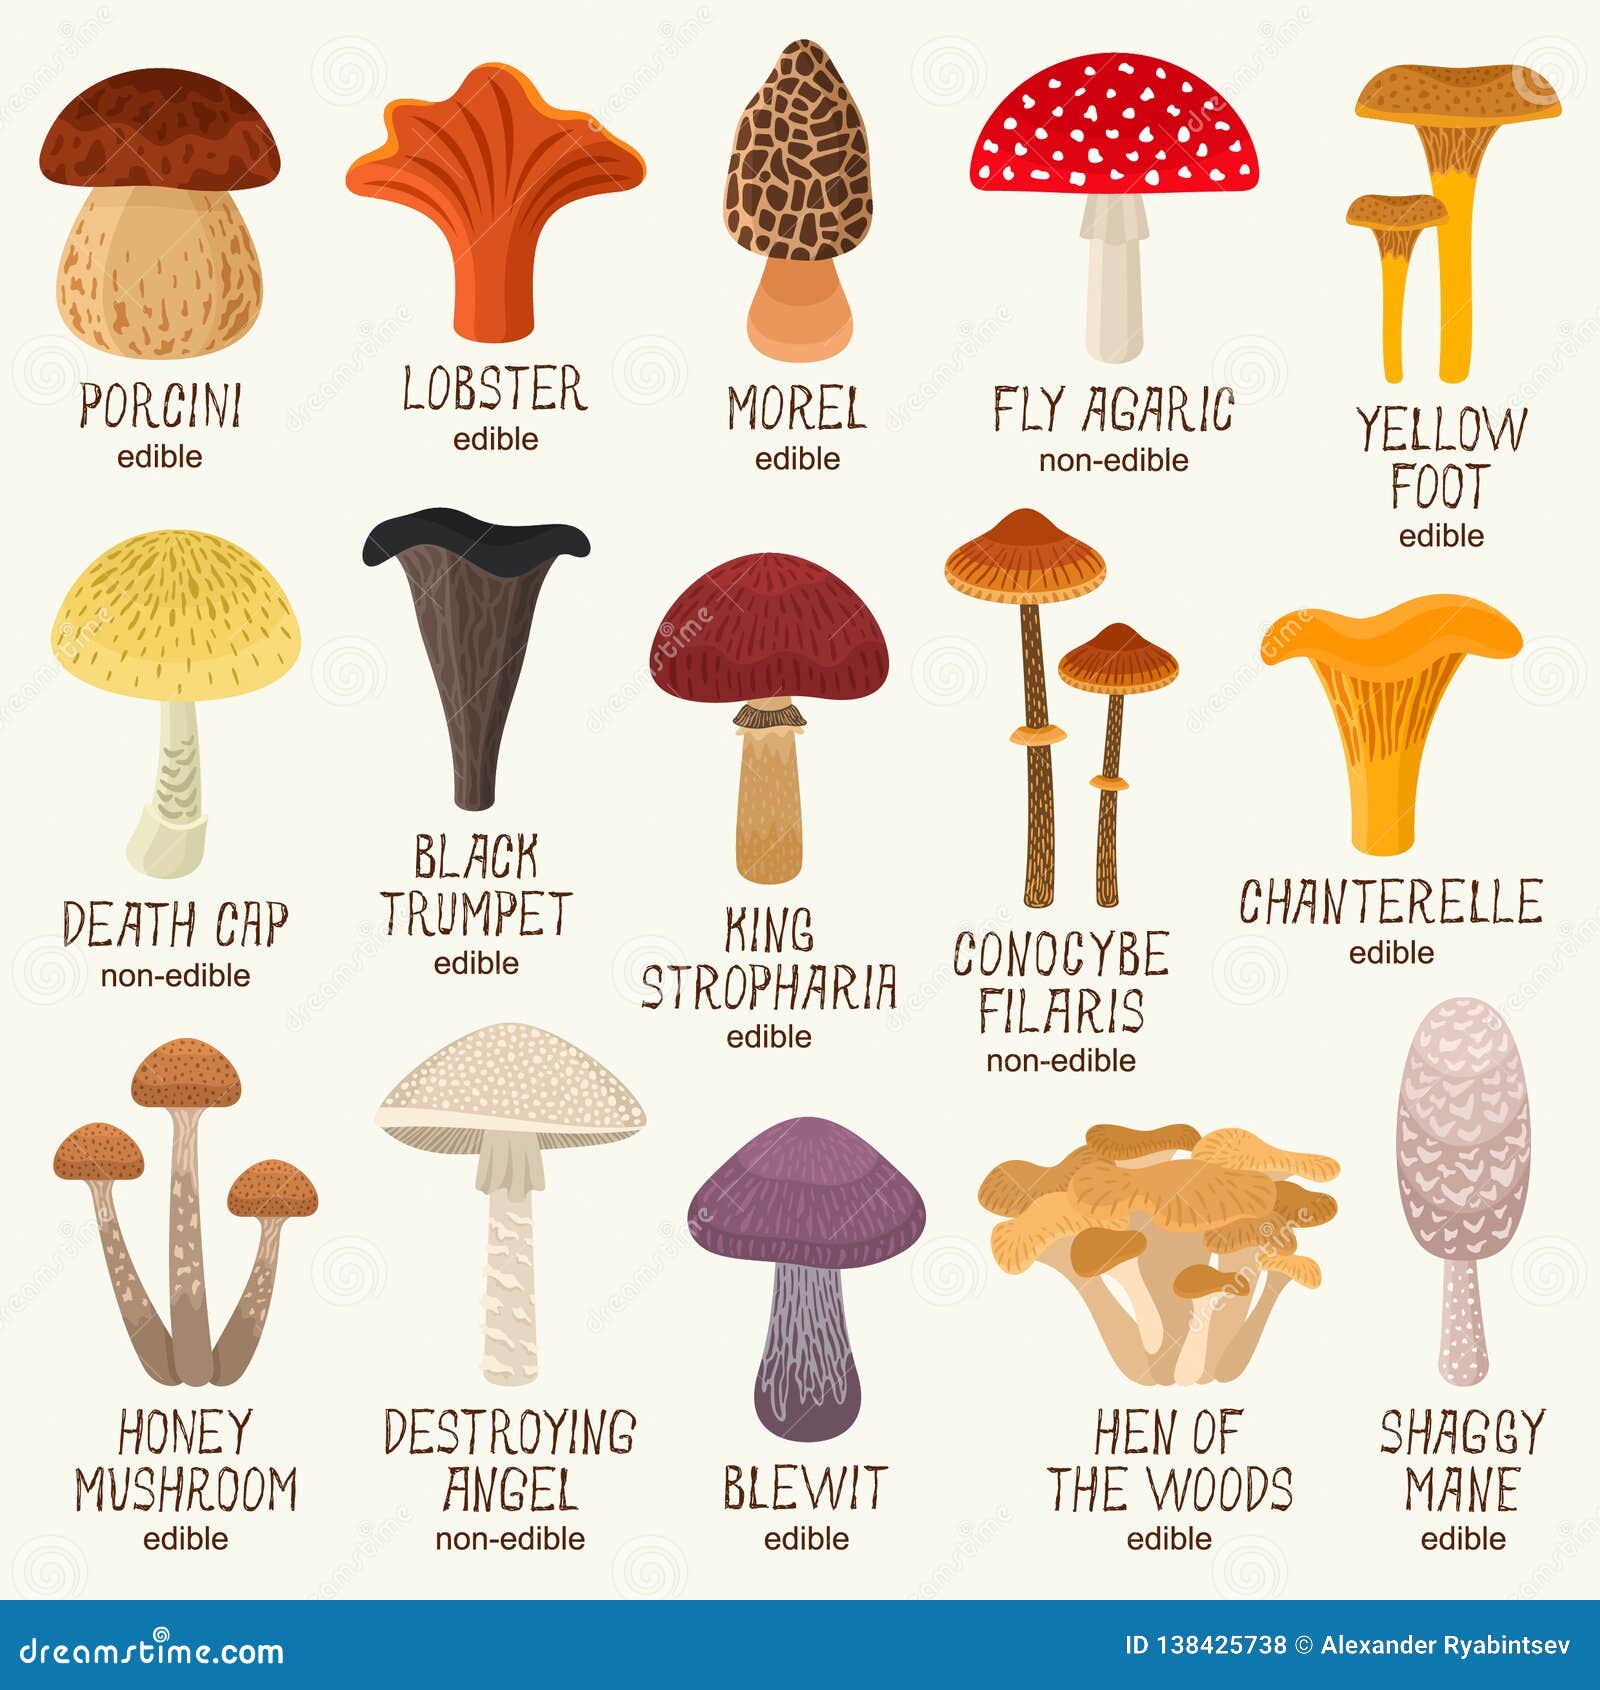 edible and non-edible mushrooms  set